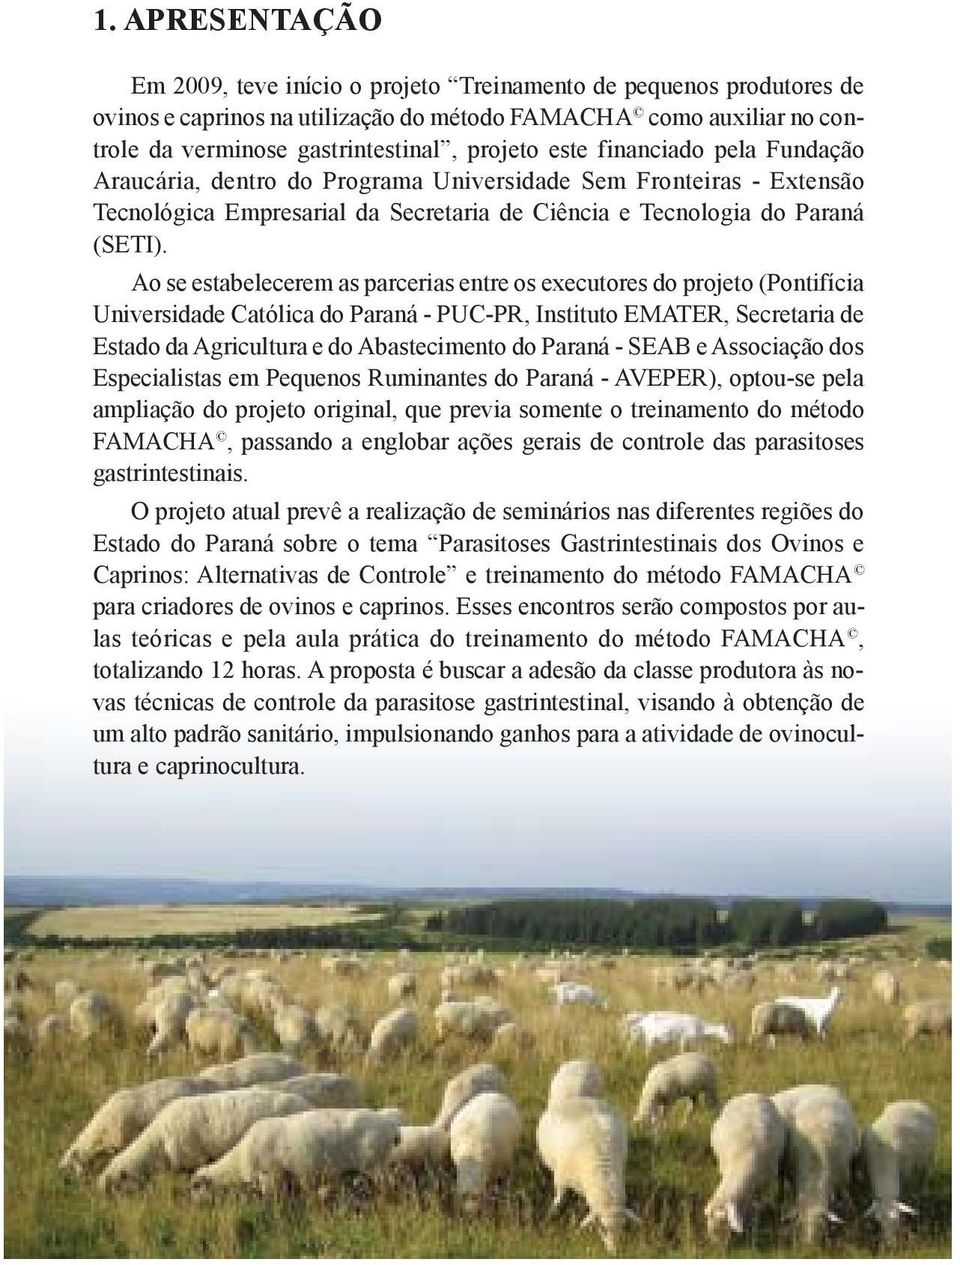 Ao se estabelecerem as parcerias entre os executores do projeto (Pontifícia Universidade Católica do Paraná - PUC-PR, Instituto EMATER, Secretaria de Estado da Agricultura e do Abastecimento do